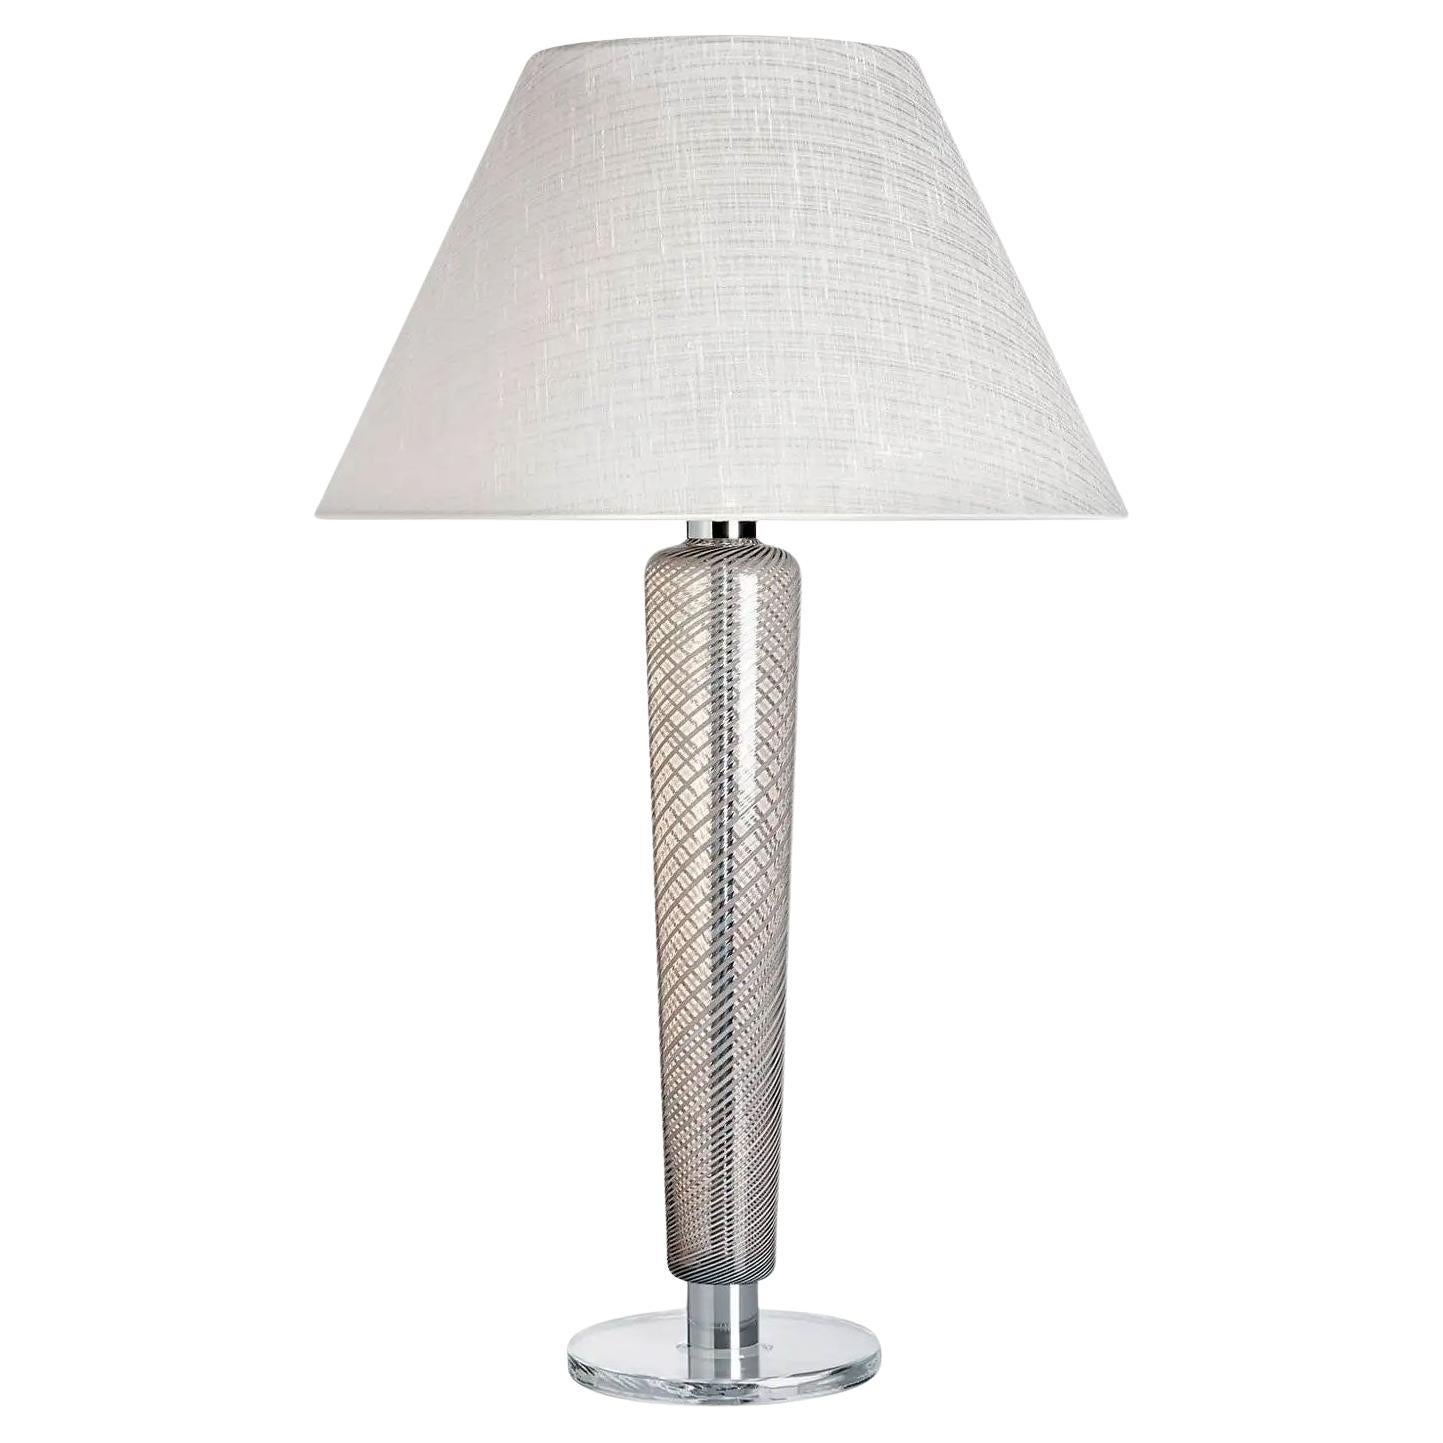 Faro Carlo Moretti Contemporary Mouth Blown Murano Grey/White Glass Table Lamp For Sale